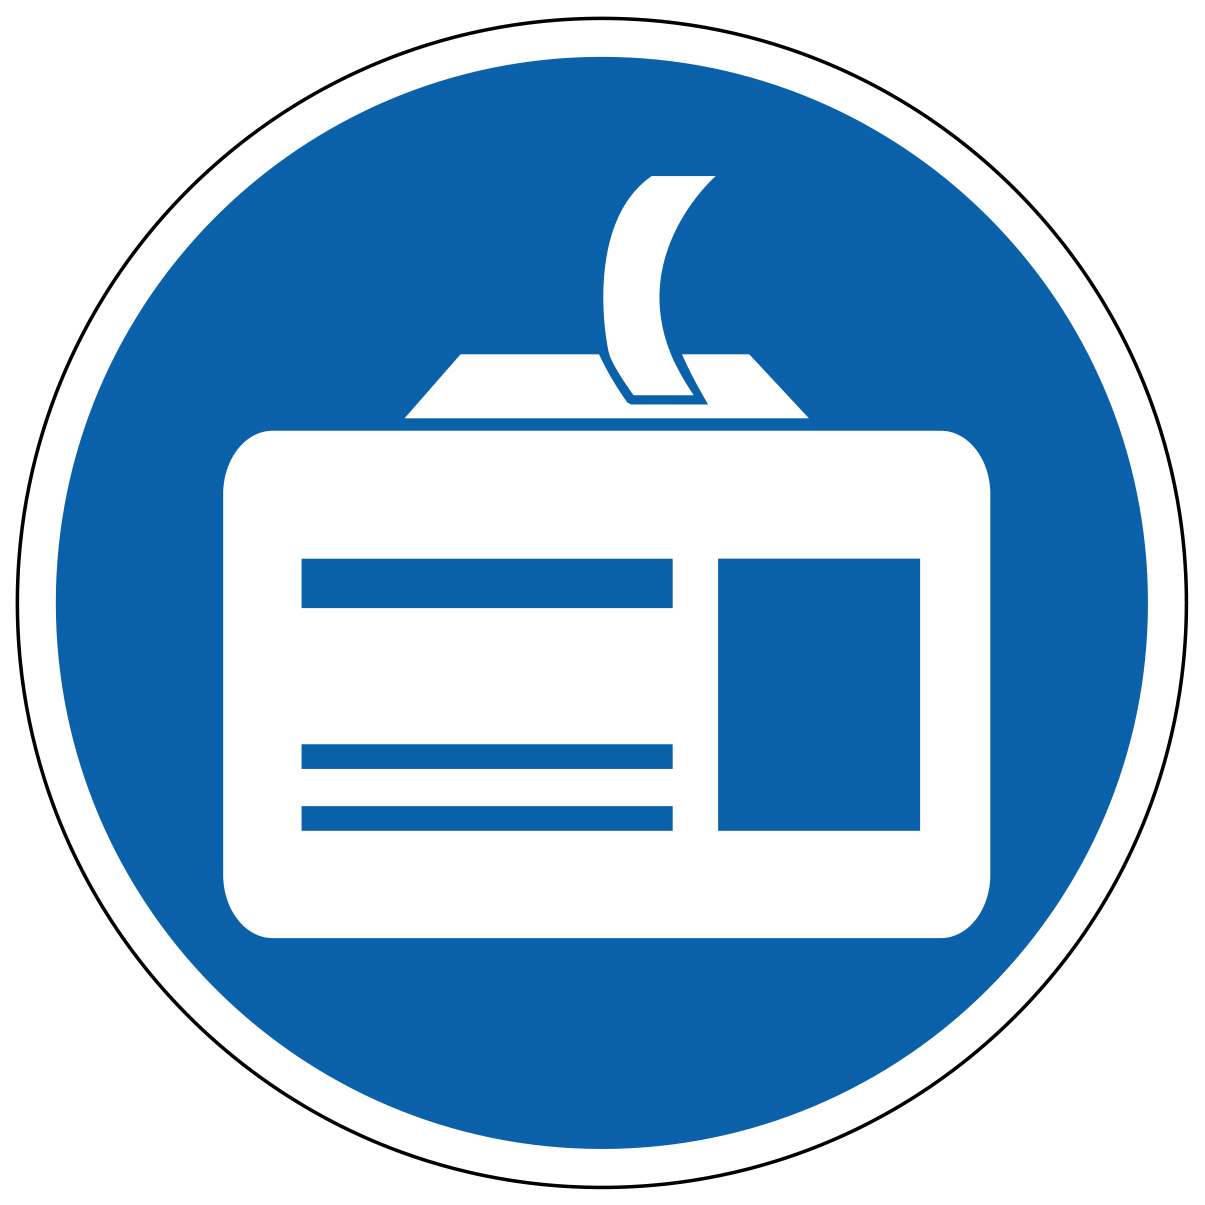 Enregistrement personnalisé obligatoire - étiquettes et panneaux d'obligation et de consigne